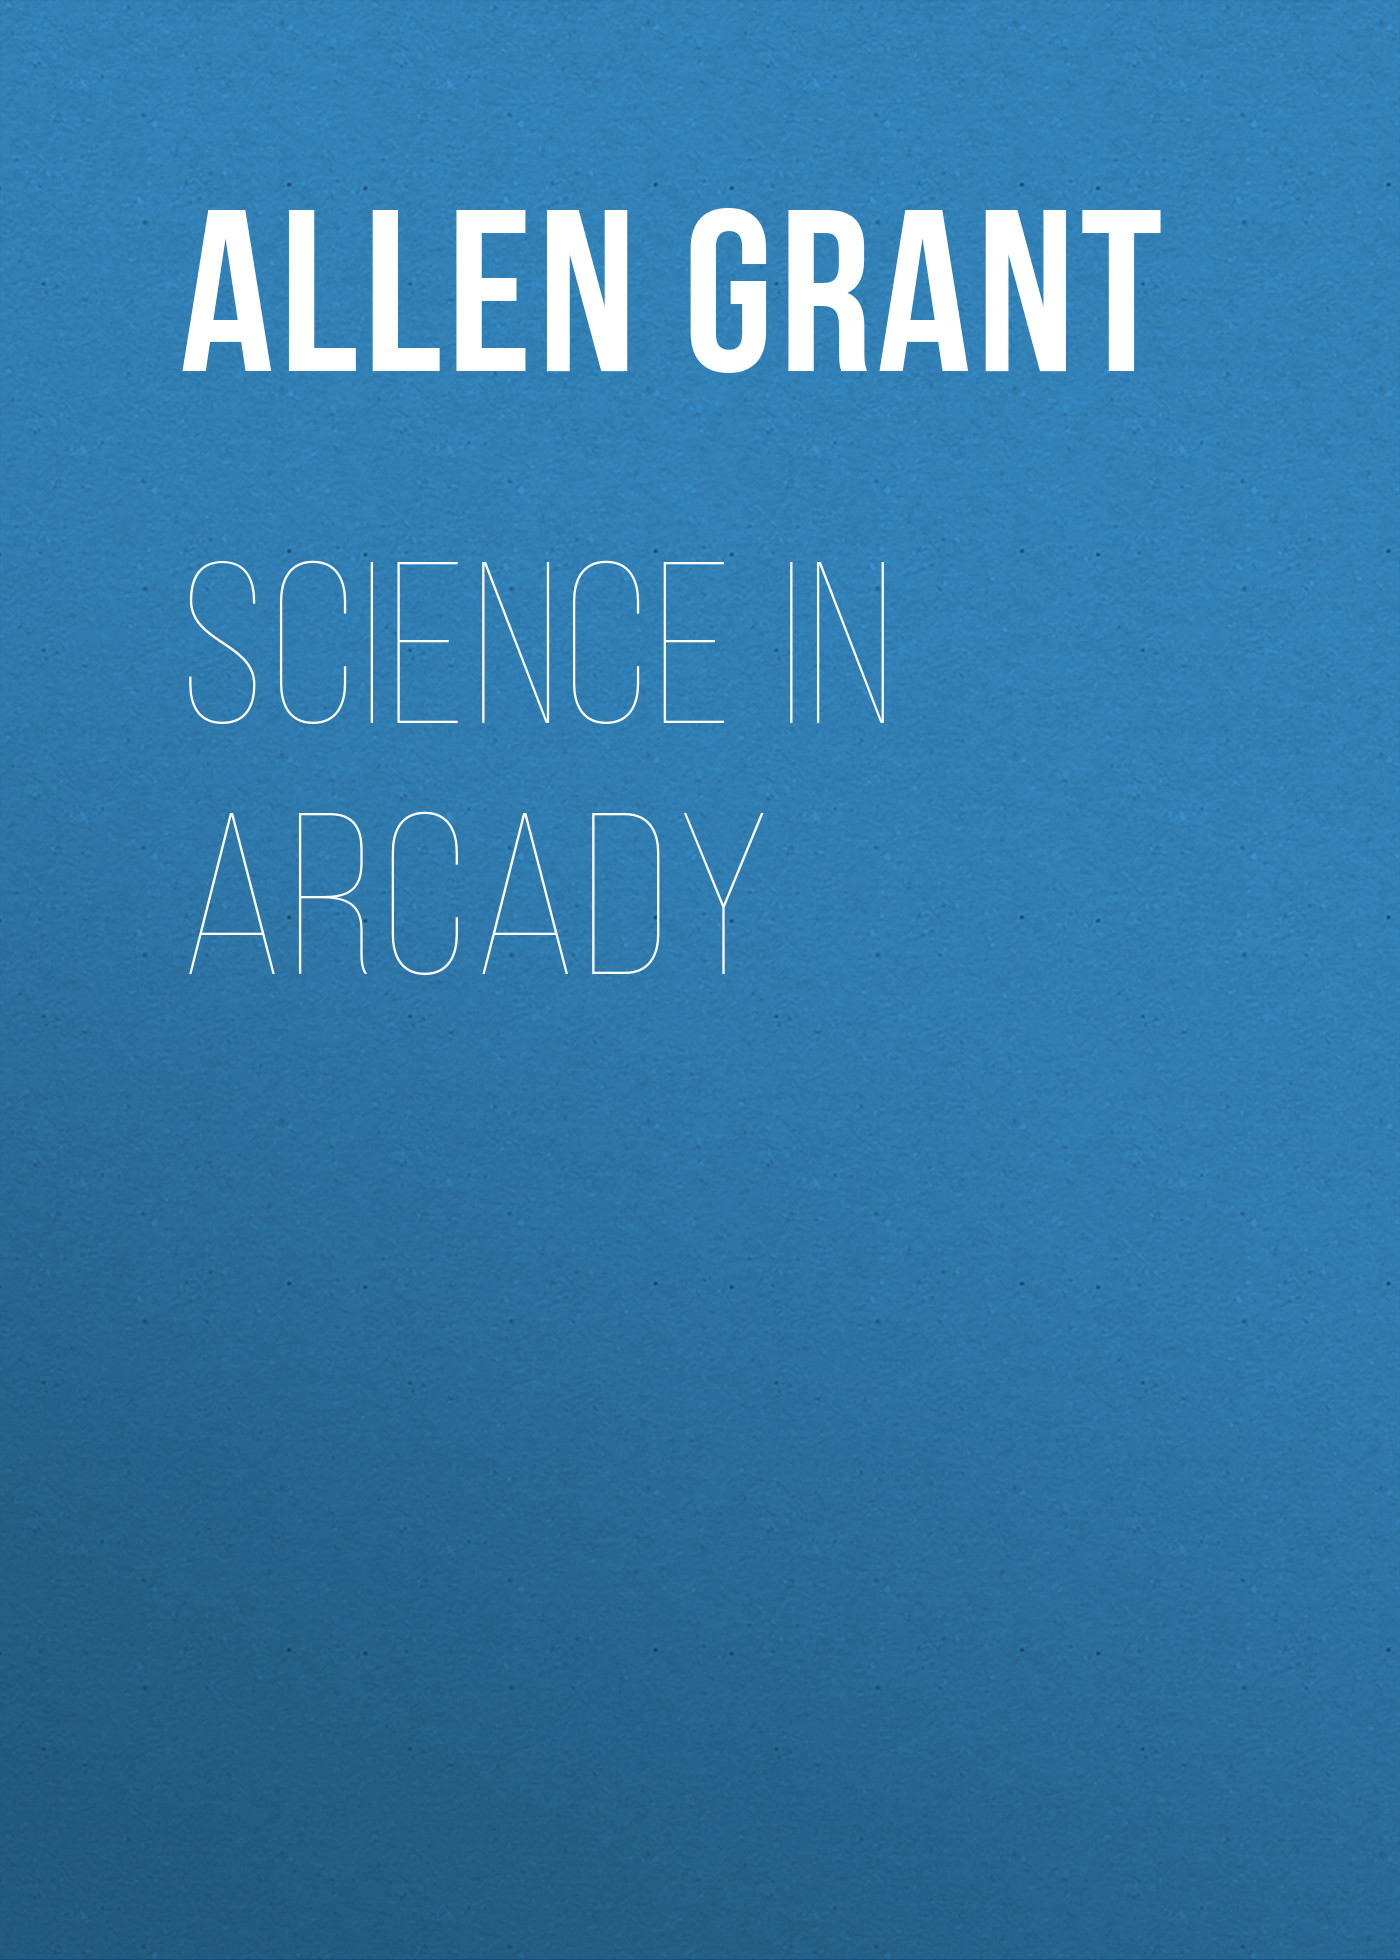 Книга Science in Arcady из серии , созданная Grant Allen, может относится к жанру Зарубежная образовательная литература, История. Стоимость электронной книги Science in Arcady с идентификатором 36365046 составляет 0 руб.